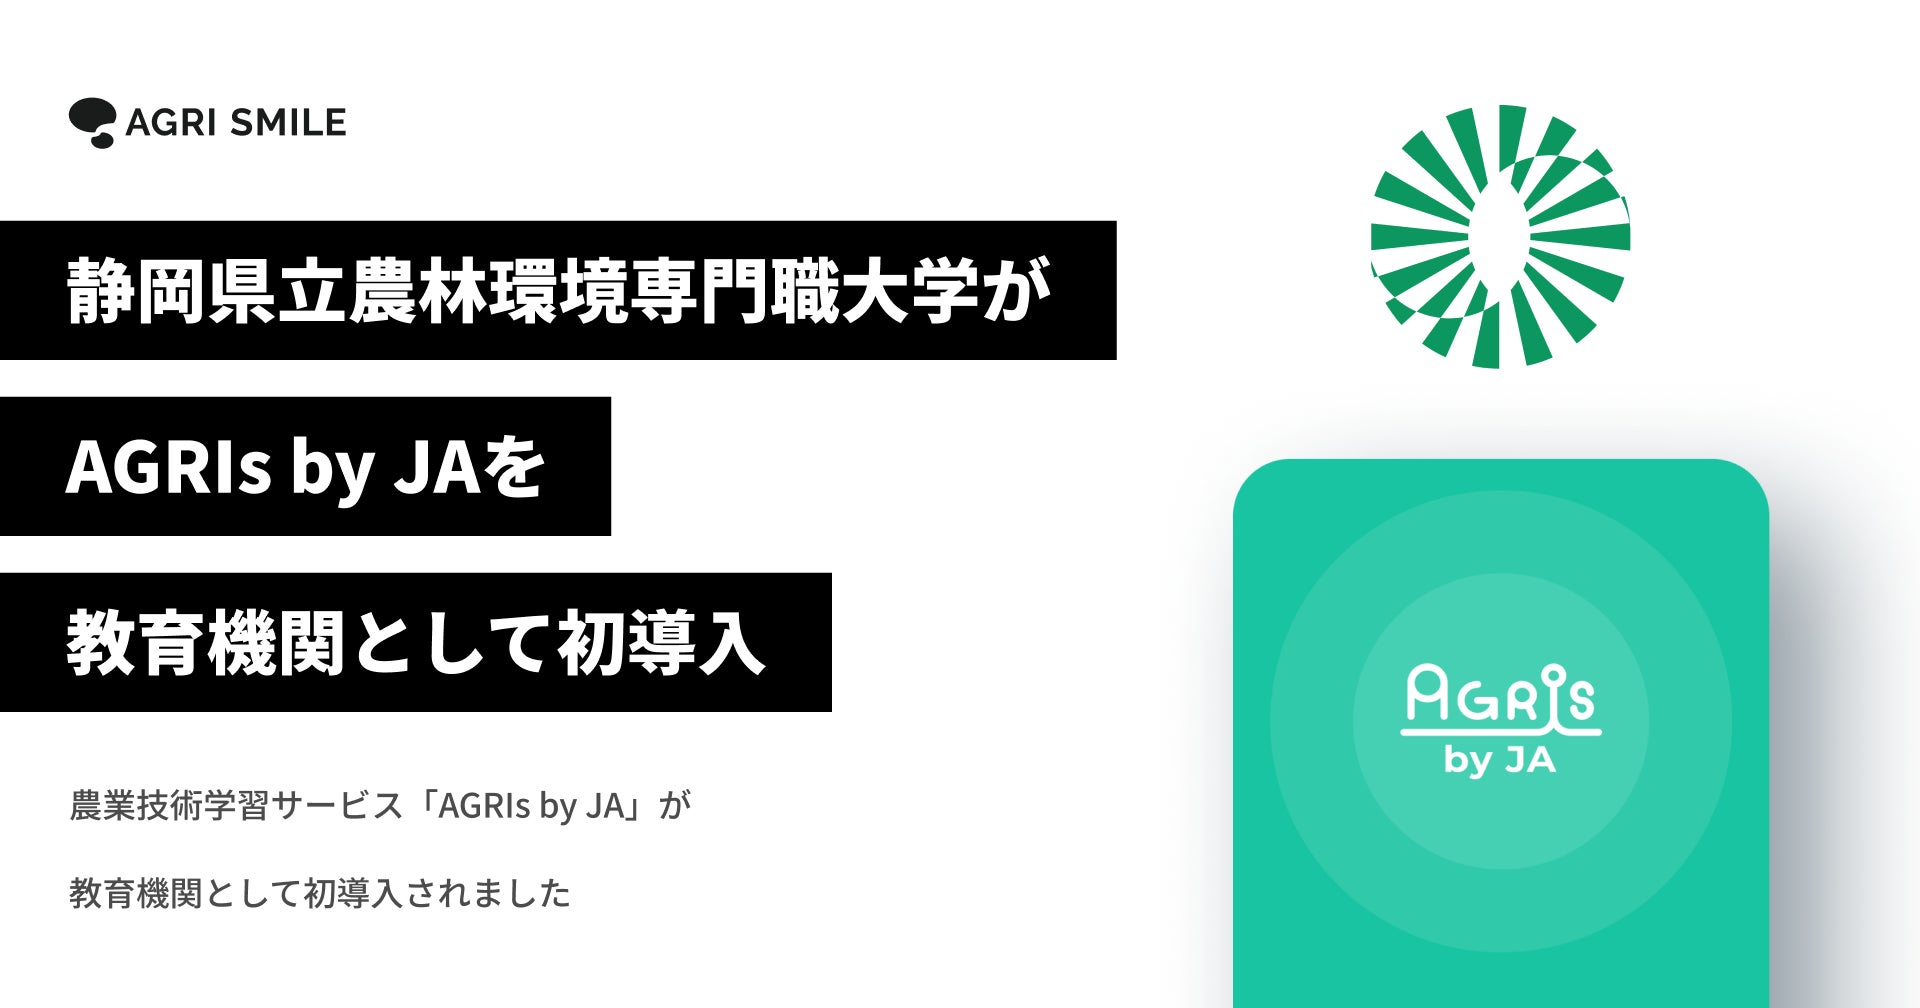 静岡県立農林環境専門職大学が、農業技術学習サービス「AGRIs by JA」を教育機関として初導入のサブ画像1